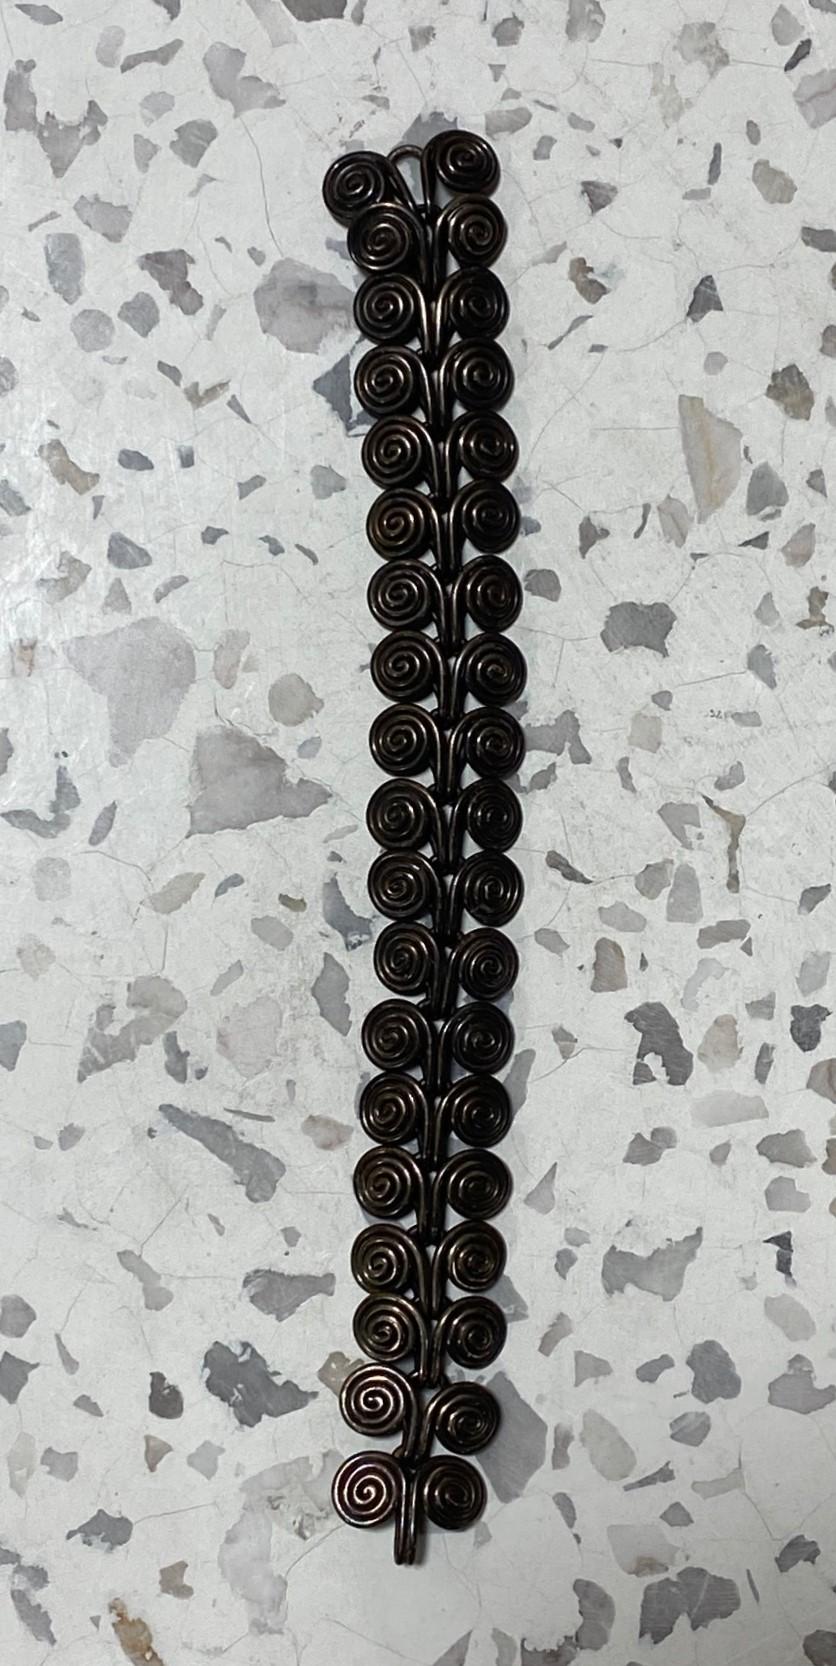 Un fantastique bracelet en argent vintage du milieu du siècle dernier, merveilleusement conçu et réalisé avec art, avec un motif en spirale/ tourbillon rappelant quelque peu les bijoux d'Alexander Calder (veuillez noter que nous ne pensons pas qu'il